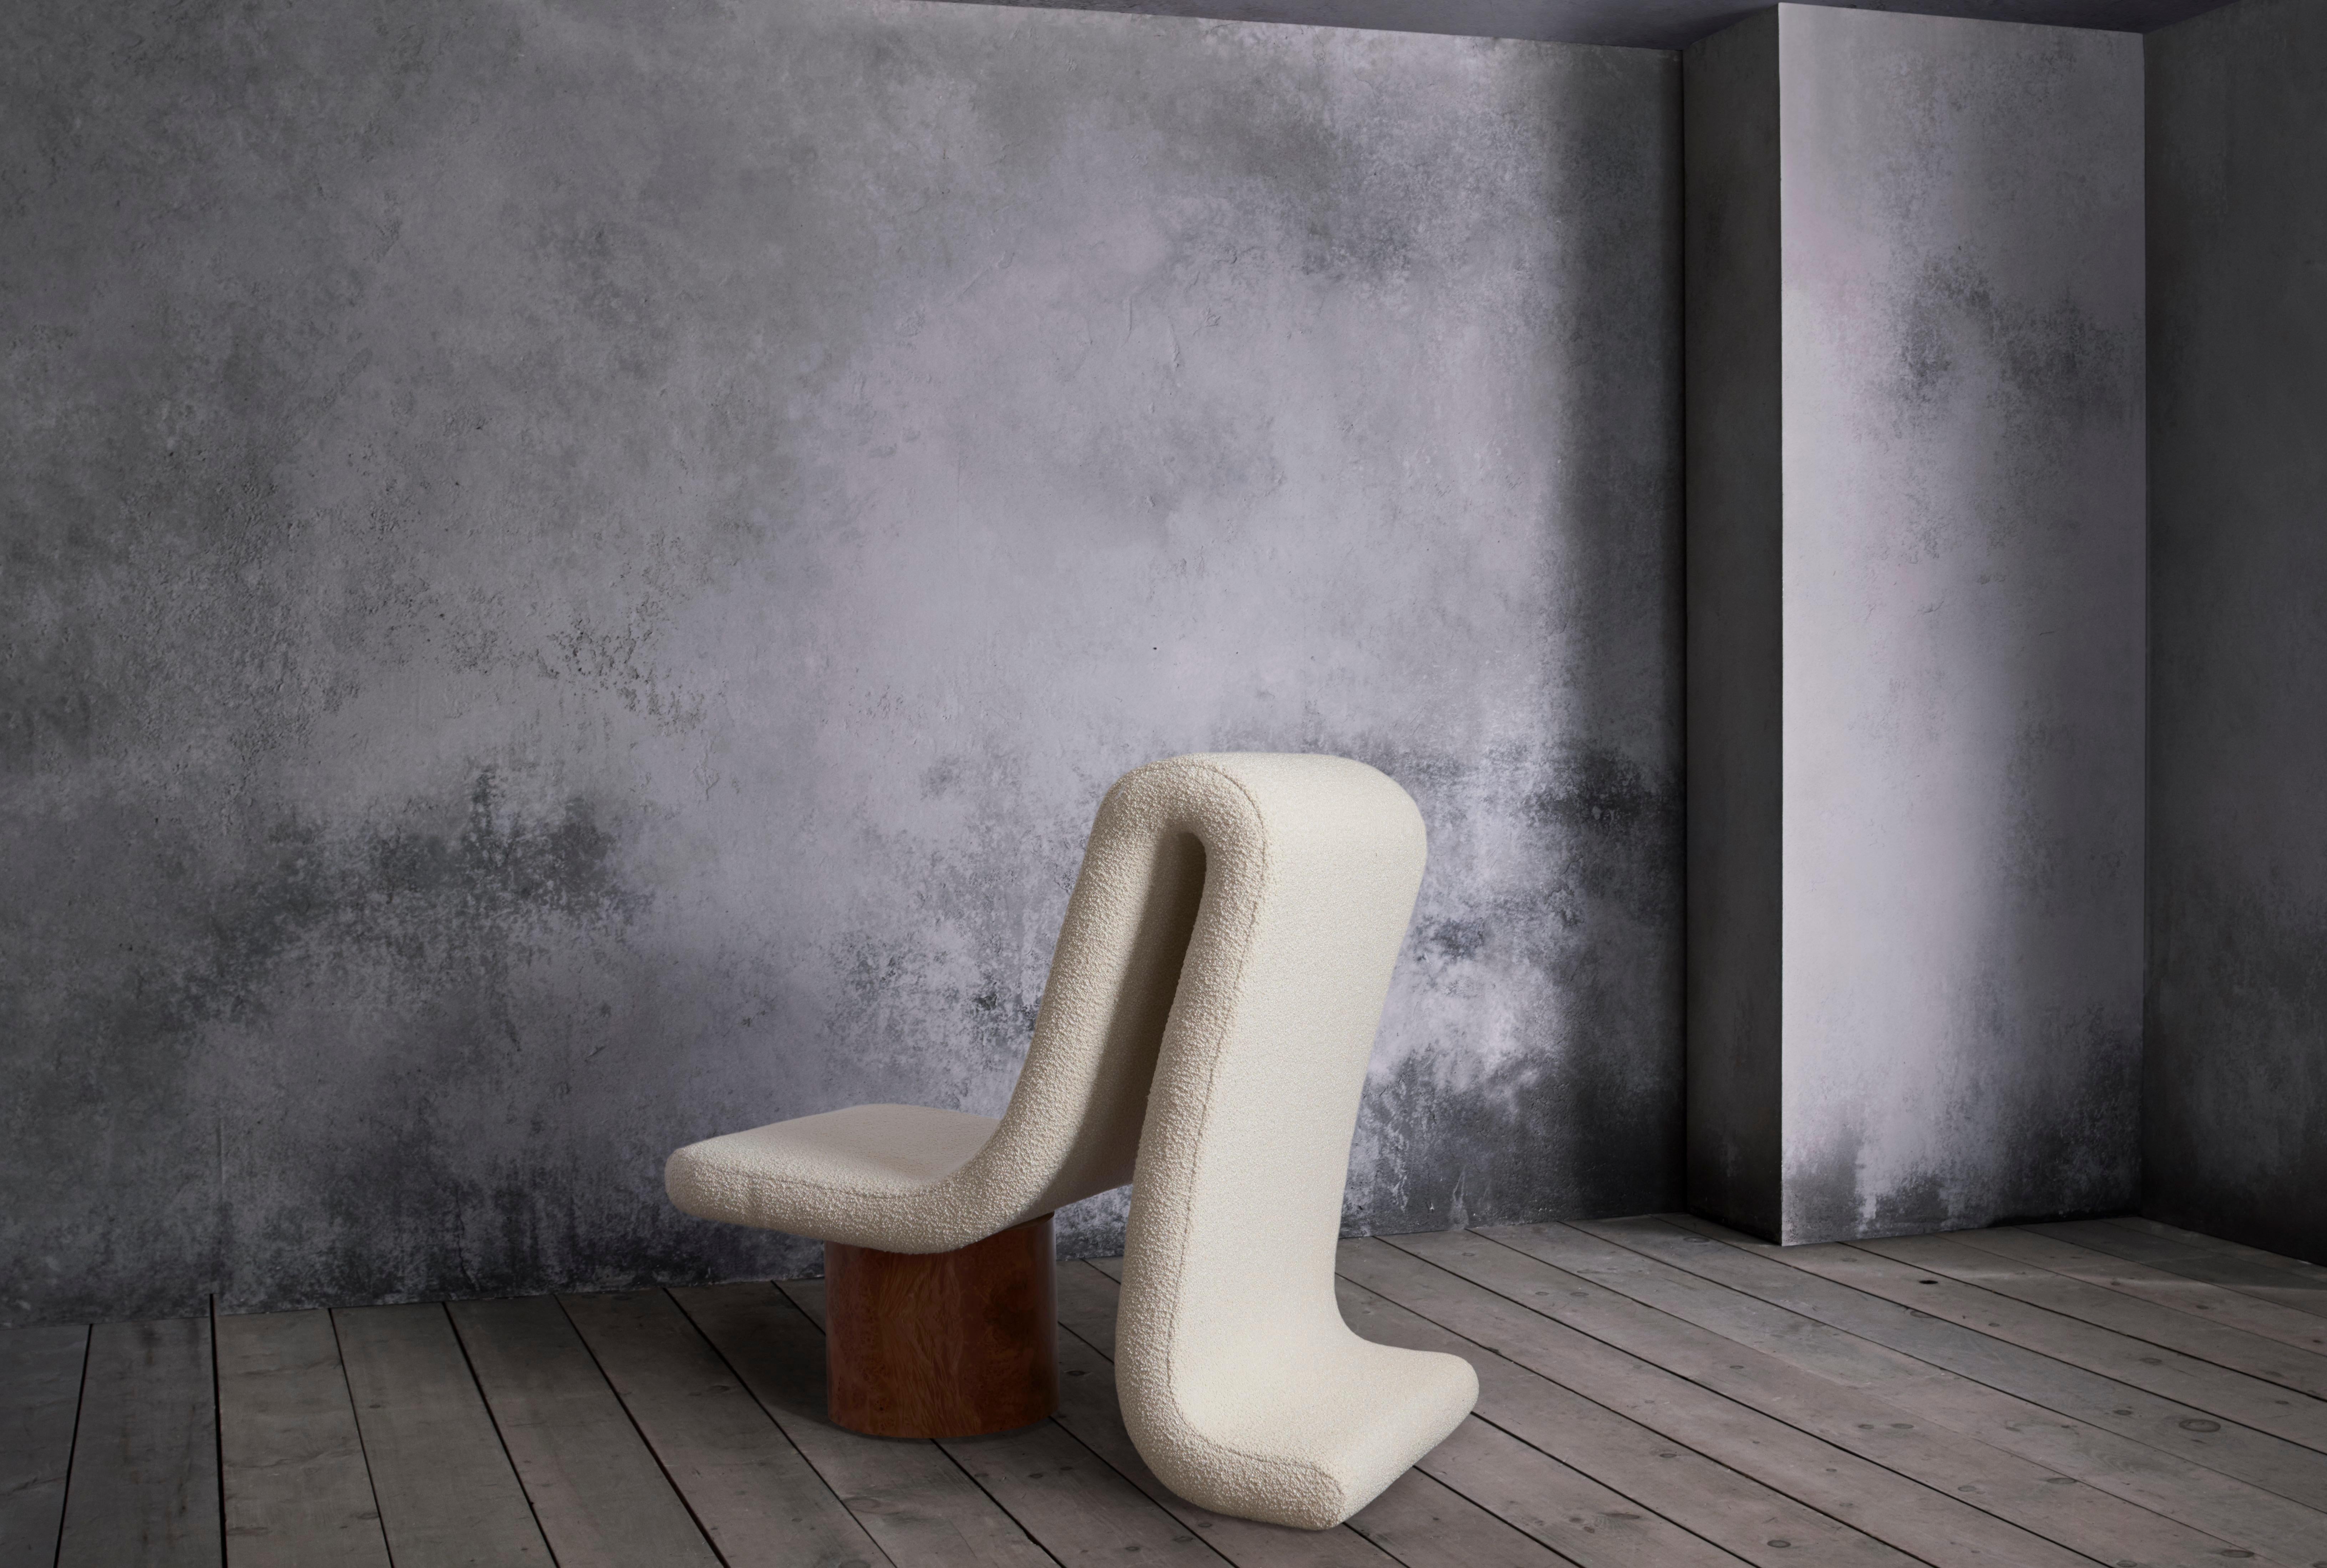 Dieser wunderbar bequeme Sessel, der aus jeder Perspektive funktioniert, kombiniert Ahornwurzelholz mit weichen Linien.

MATERIALIEN: Ahorn Wurzelholz, Boucle

Abmessungen: B - 24